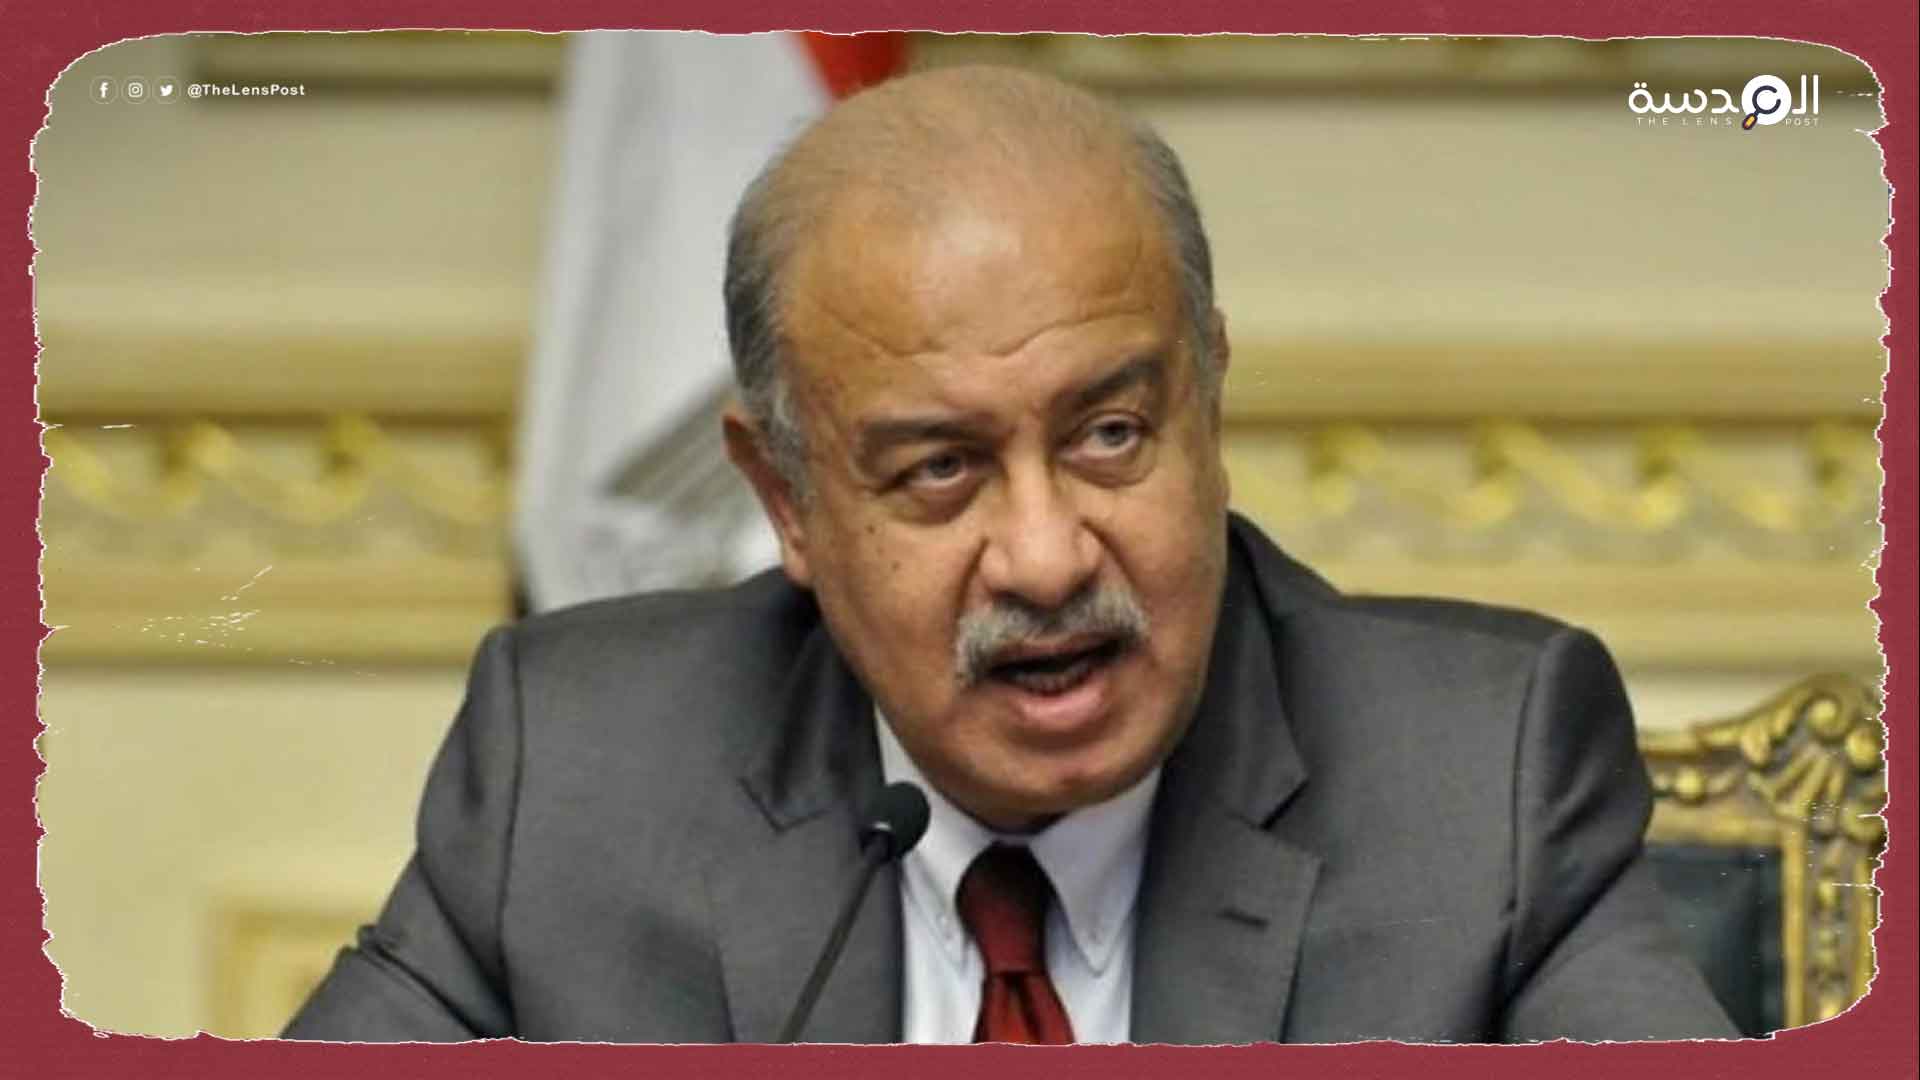 وفاة رئيس الوزراء المصري السابق "شريف إسماعيل" بعد صراع مع المرض